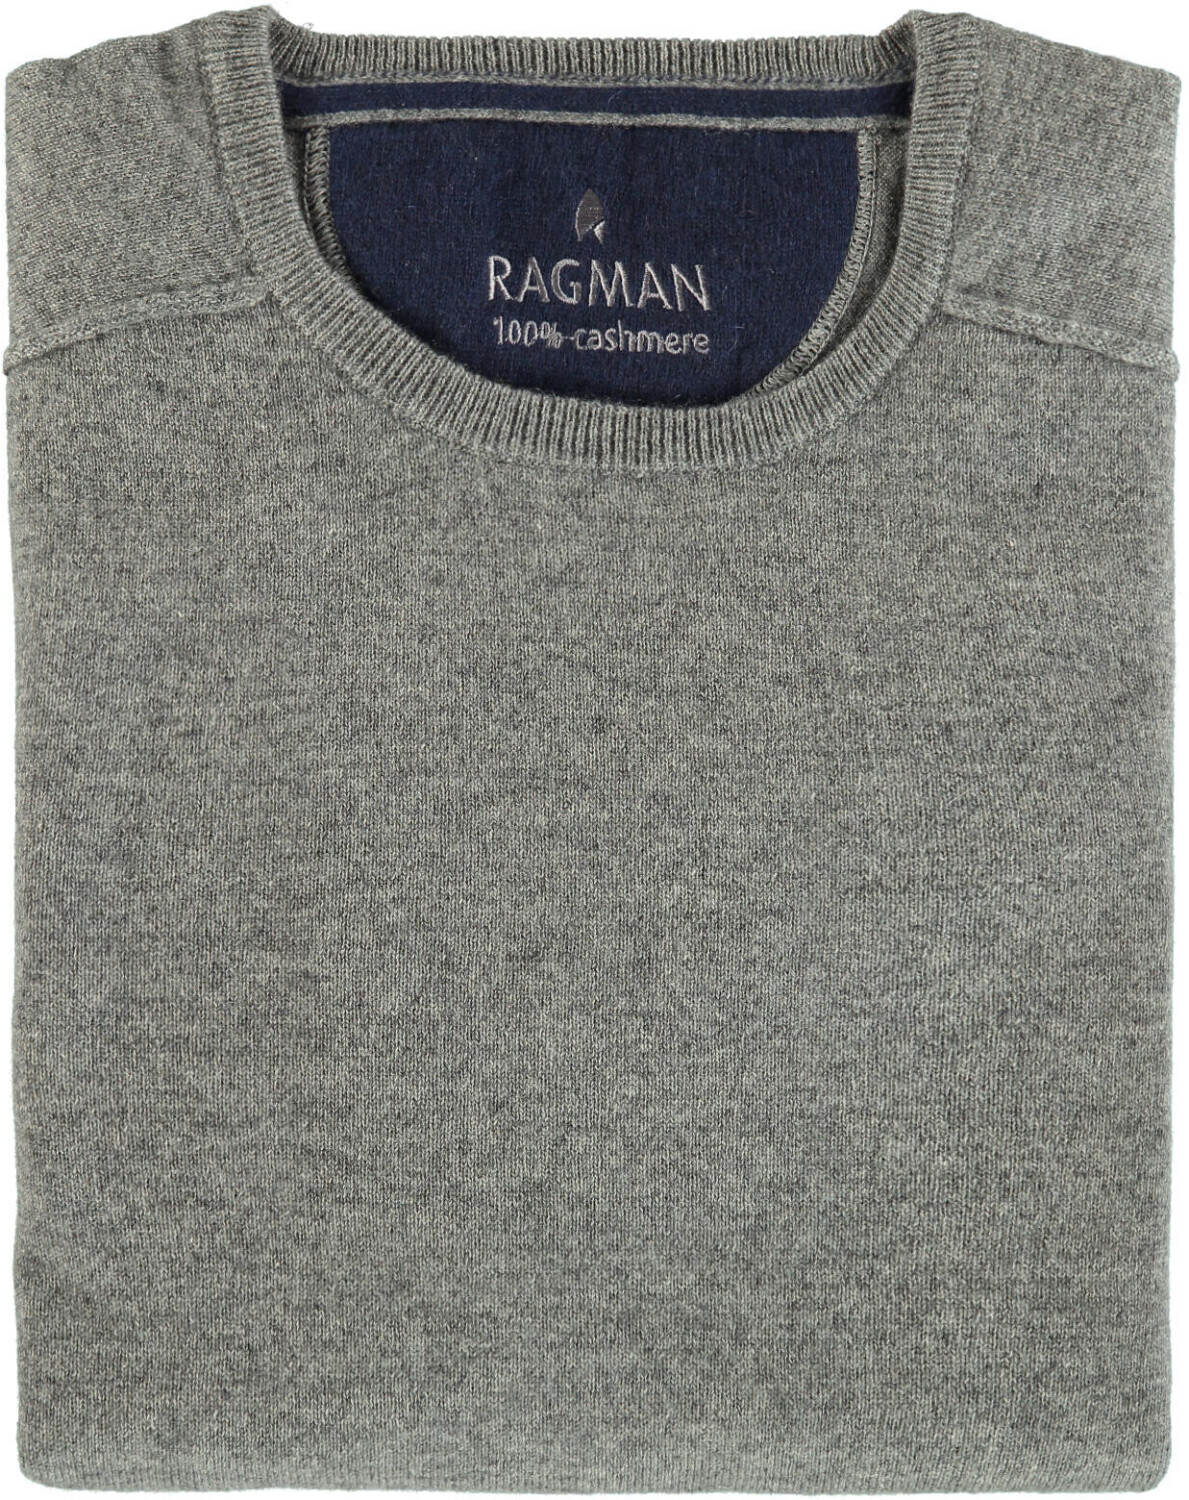 Ragman Kaschmir-Pullover Rundhals (863080-012) grau-melange ab 129,00 € |  Preisvergleich bei